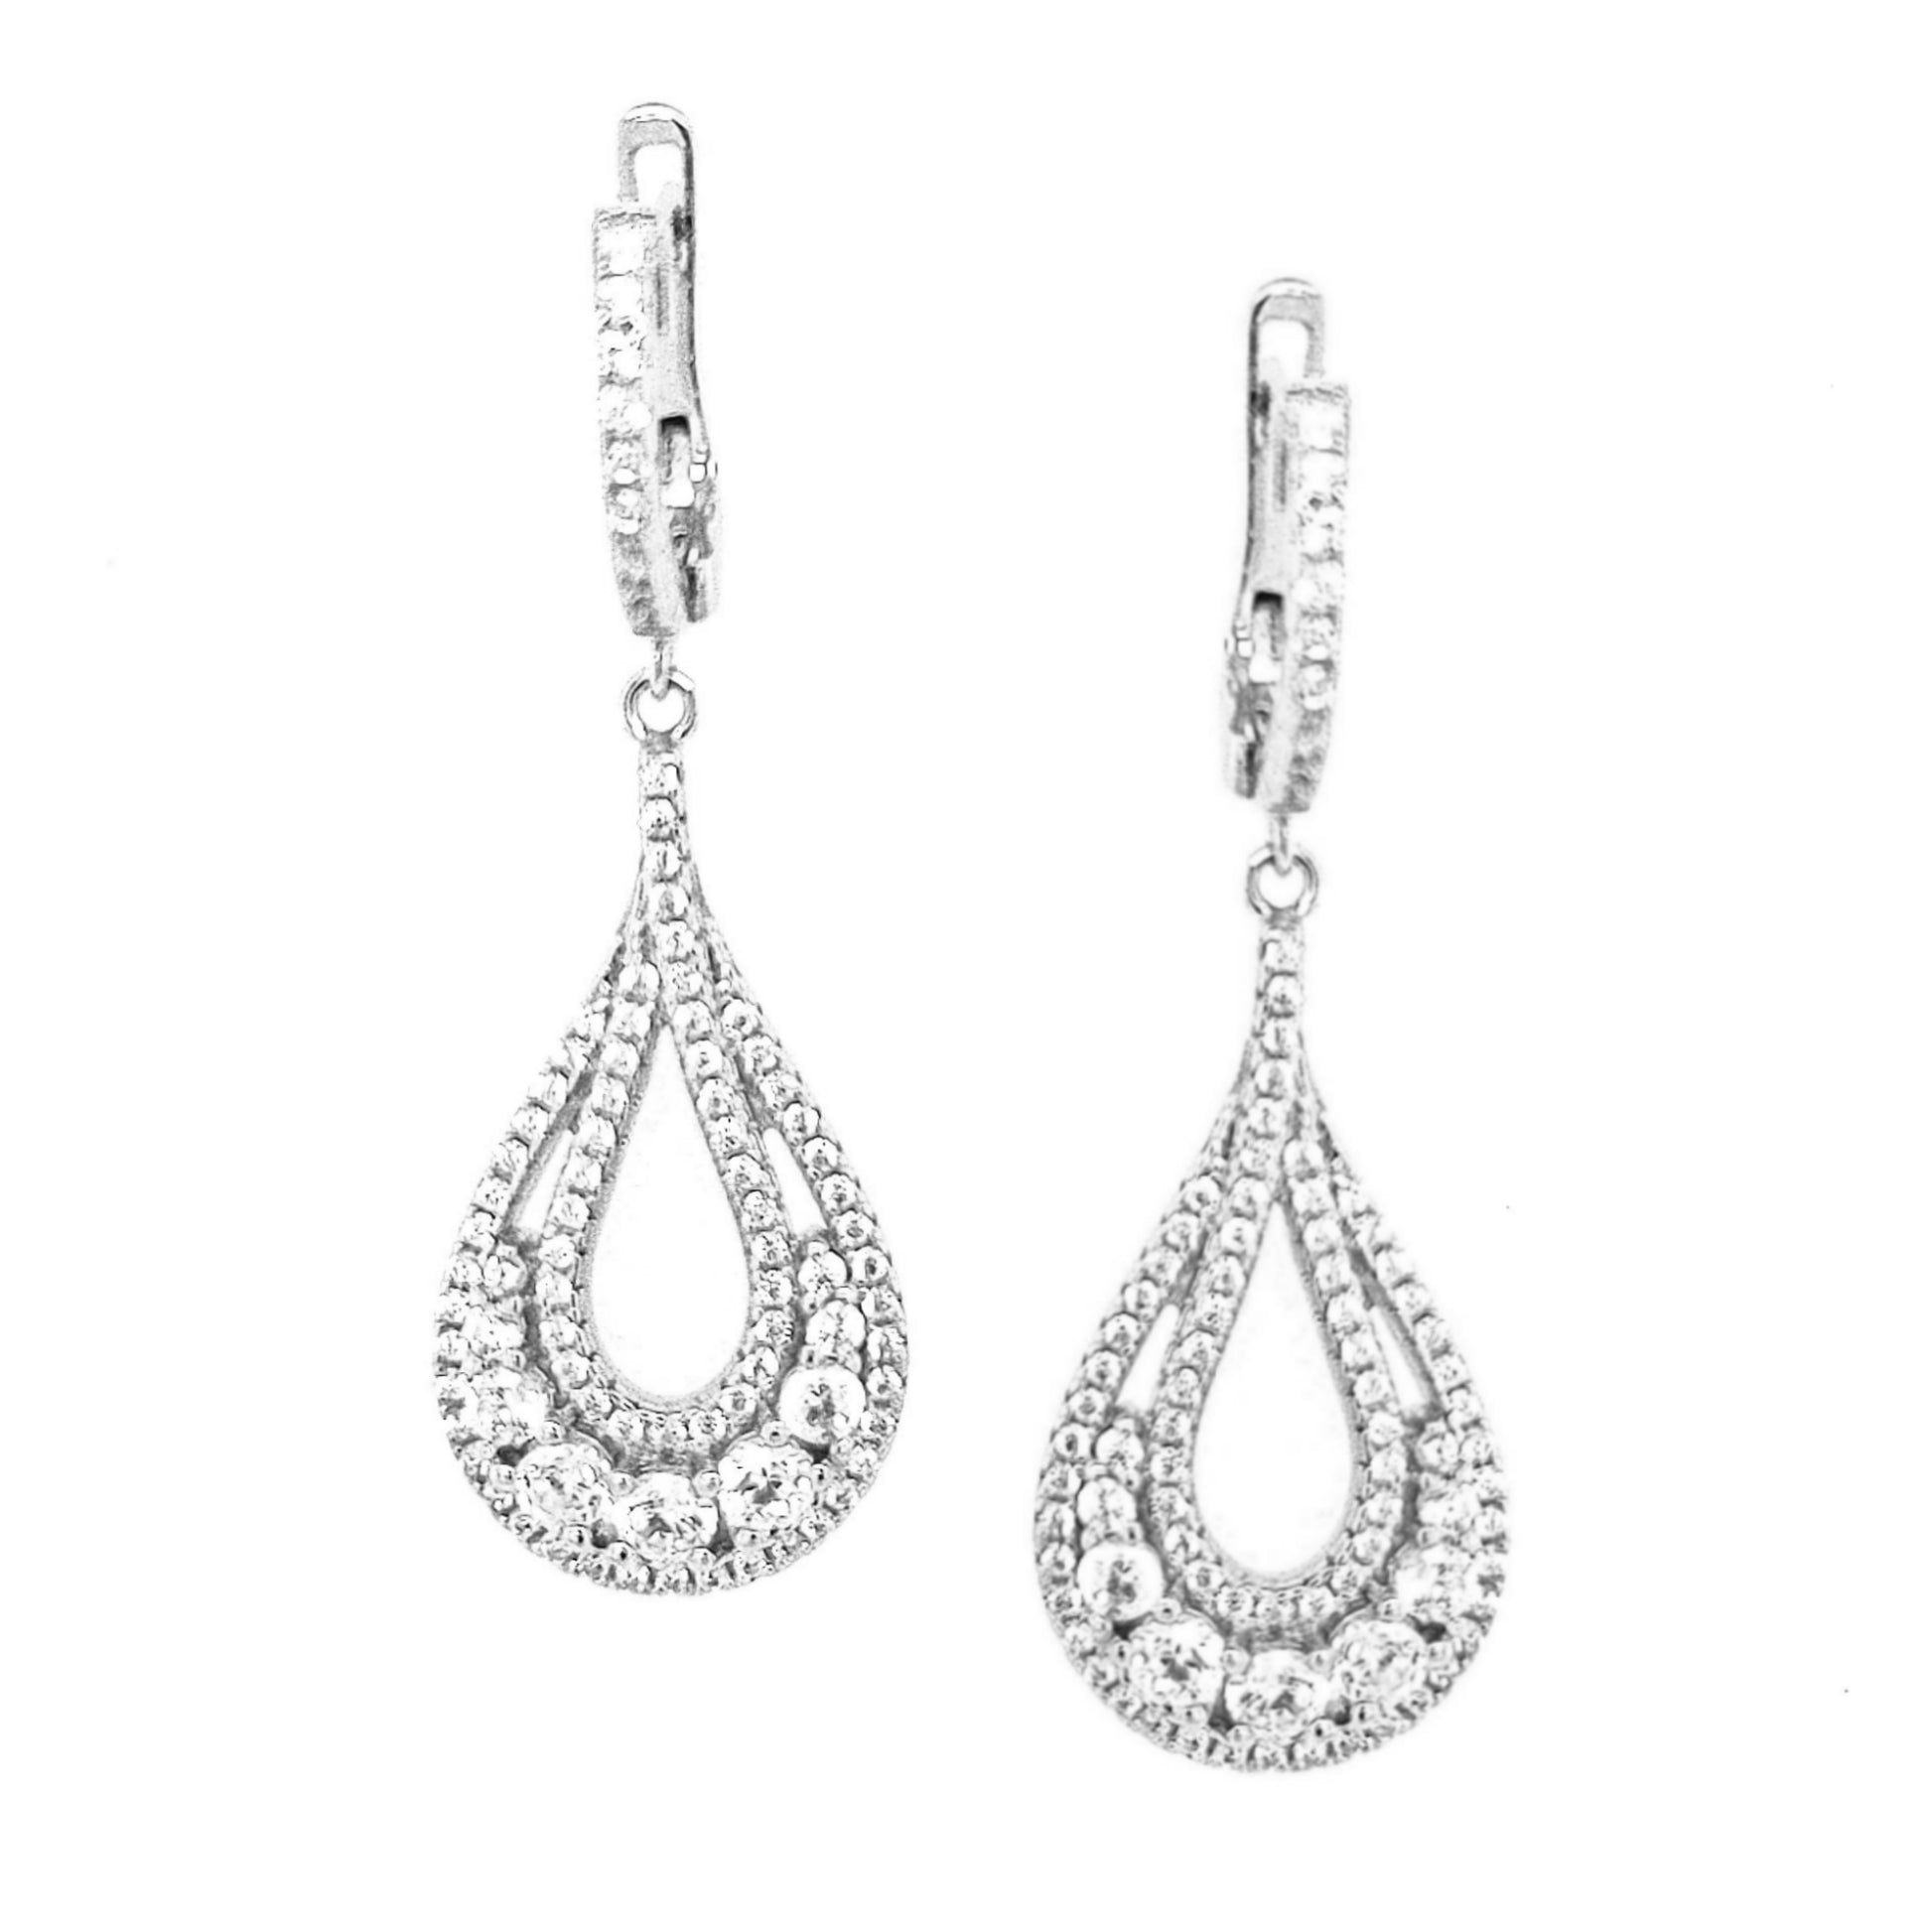 Sterling Silver Teardrop CZ Earring - HK Jewels